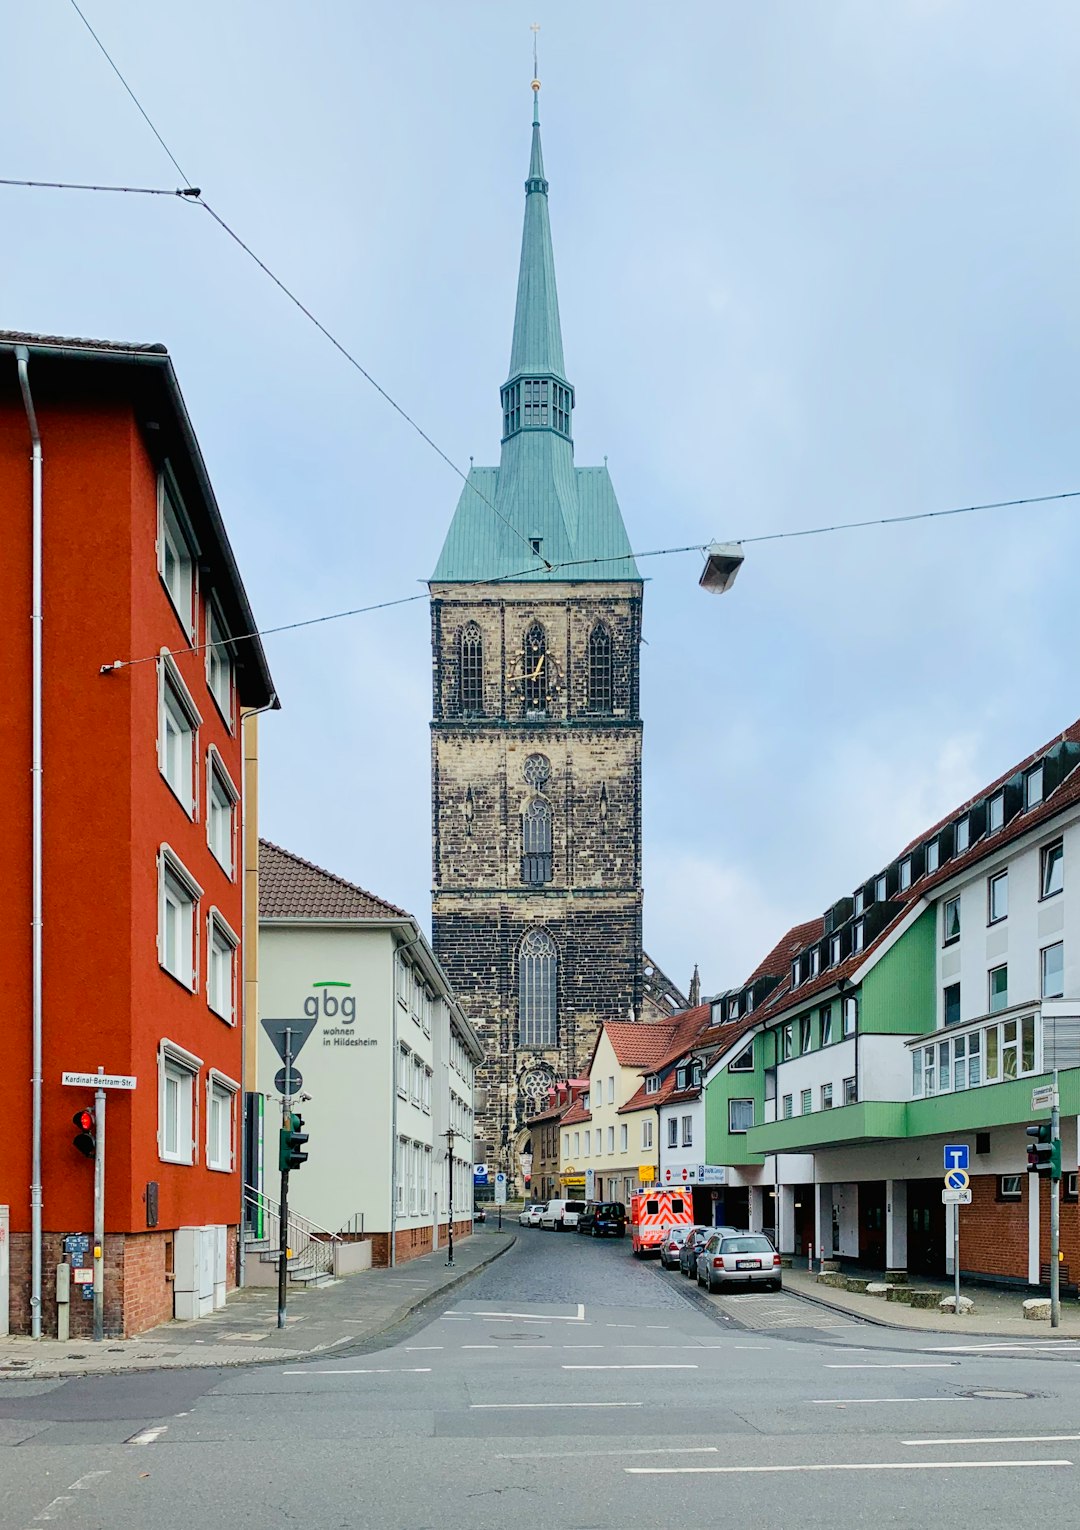 Town photo spot Hildesheim Neustadt am Rübenberge